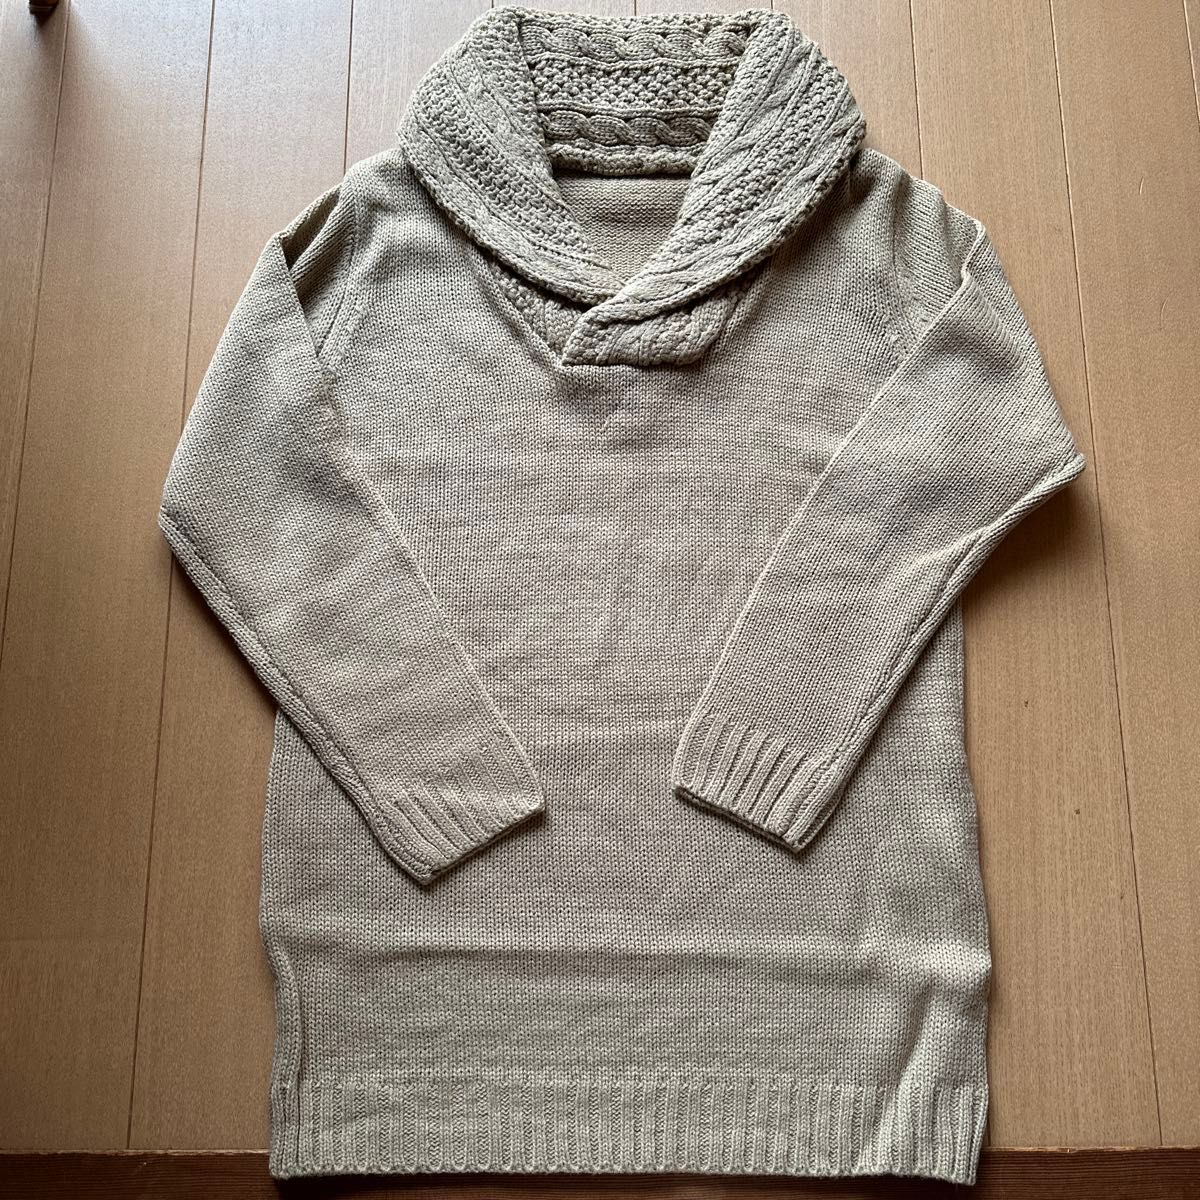 ケーブル編み襟付きあったかセーター新品